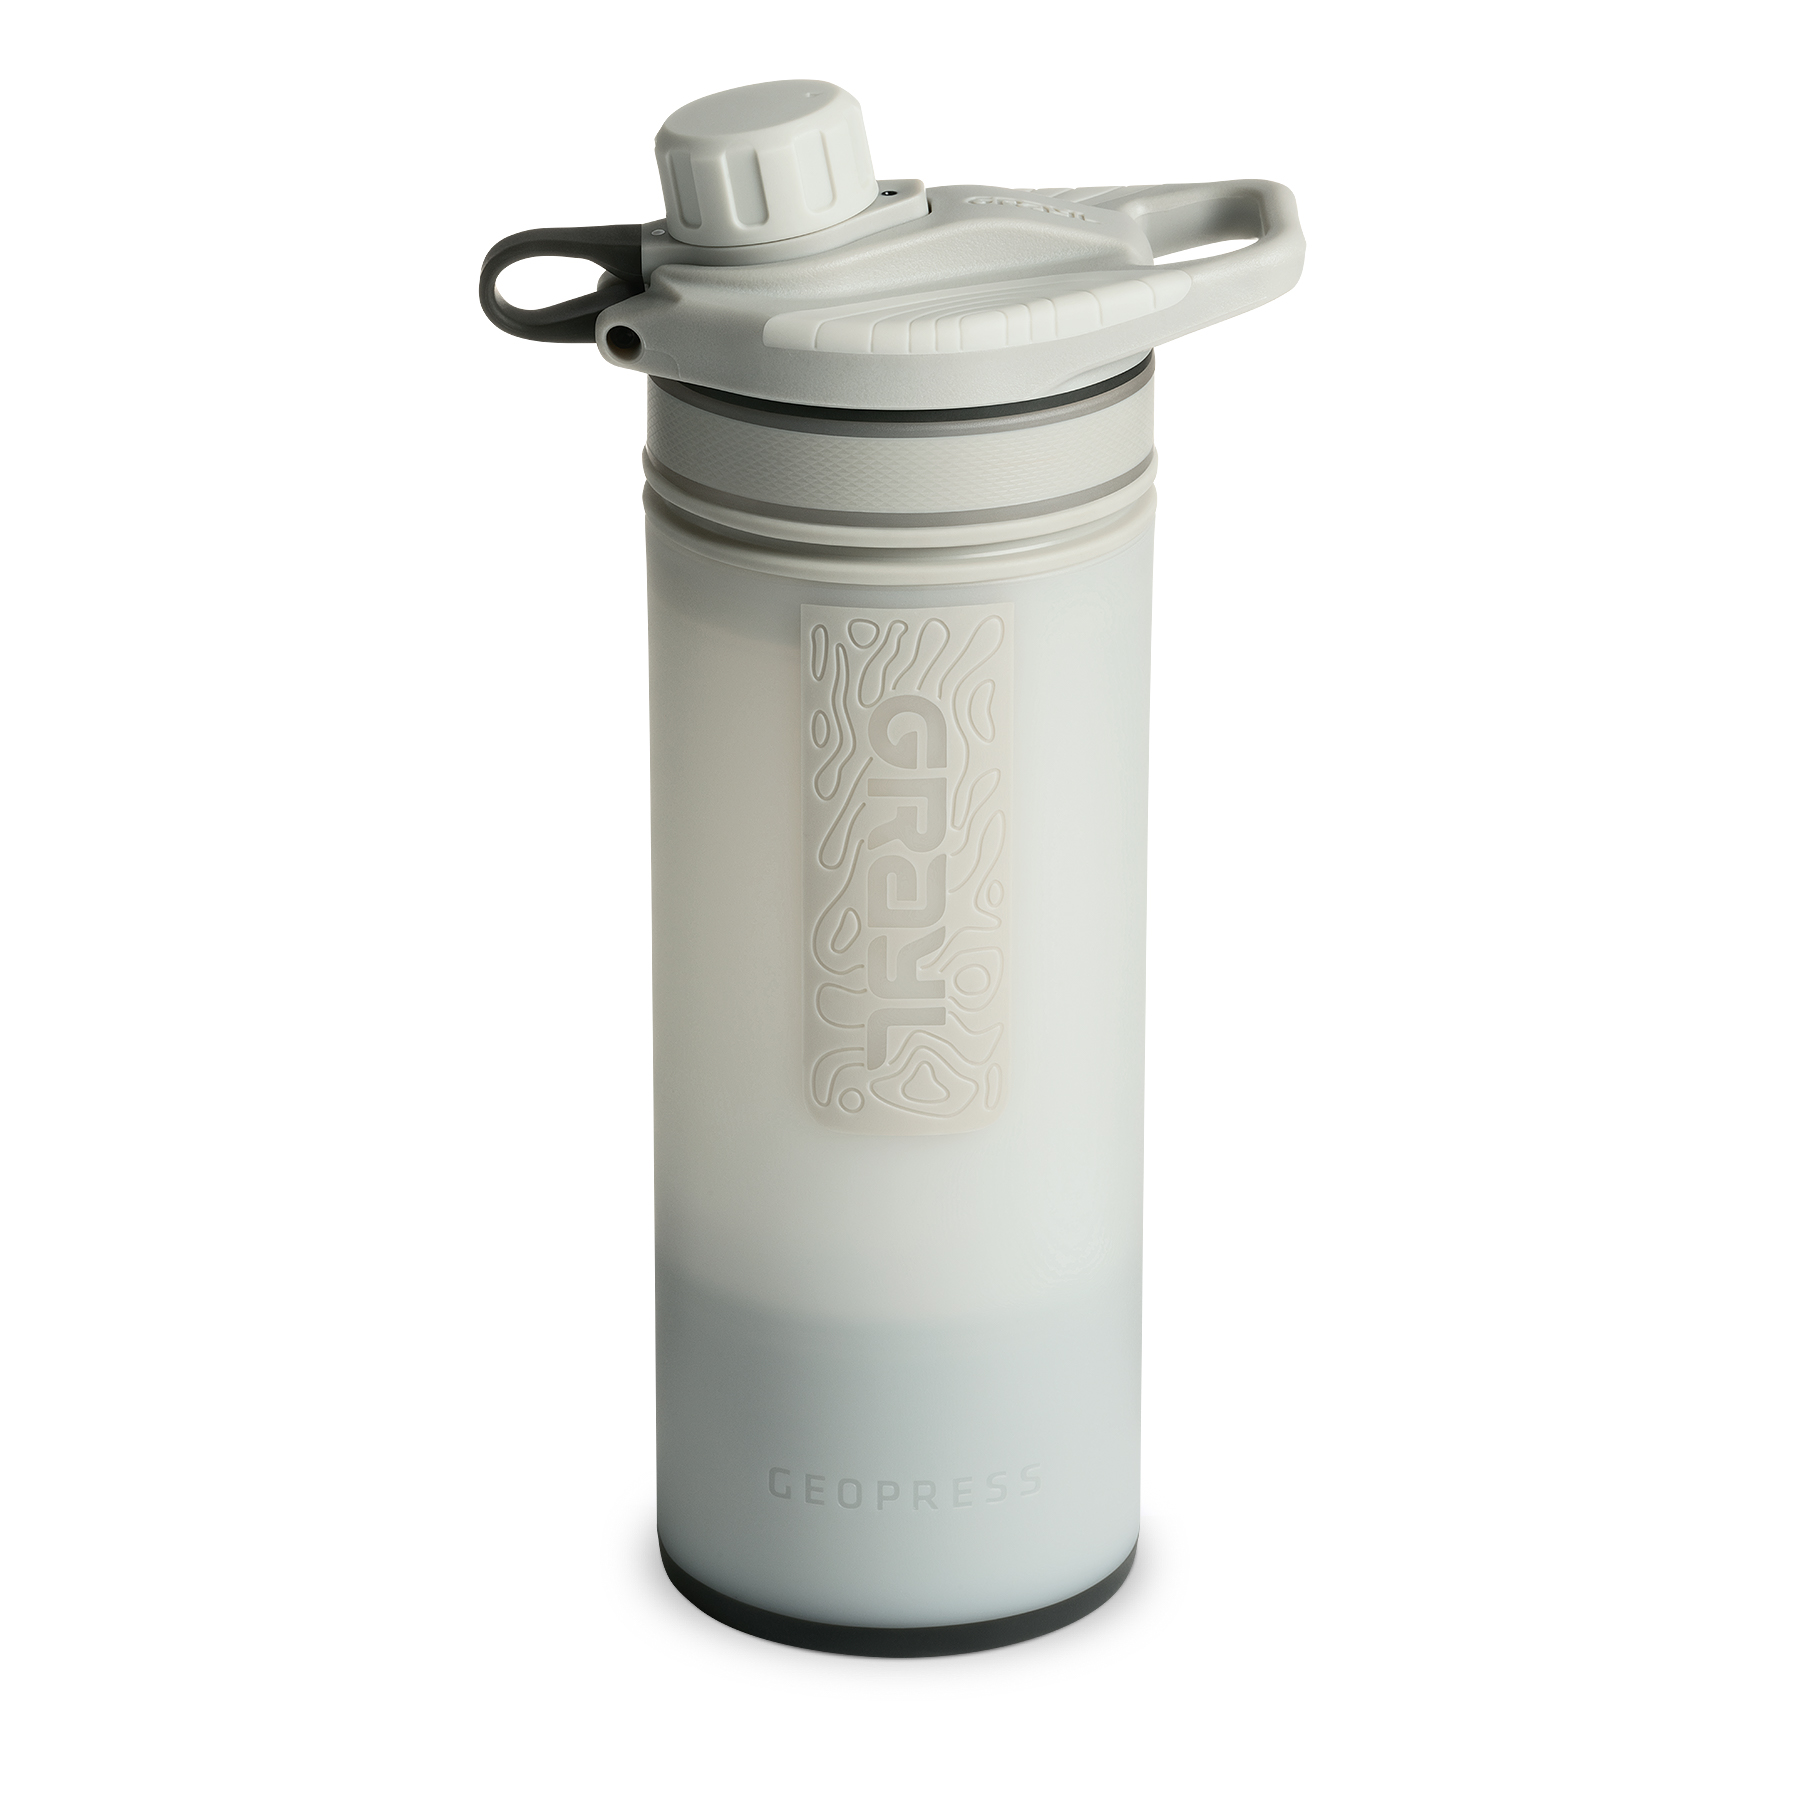 Productfoto van Grayl GeoPress Drinkfles met Waterfilter - 710ml - Peak White